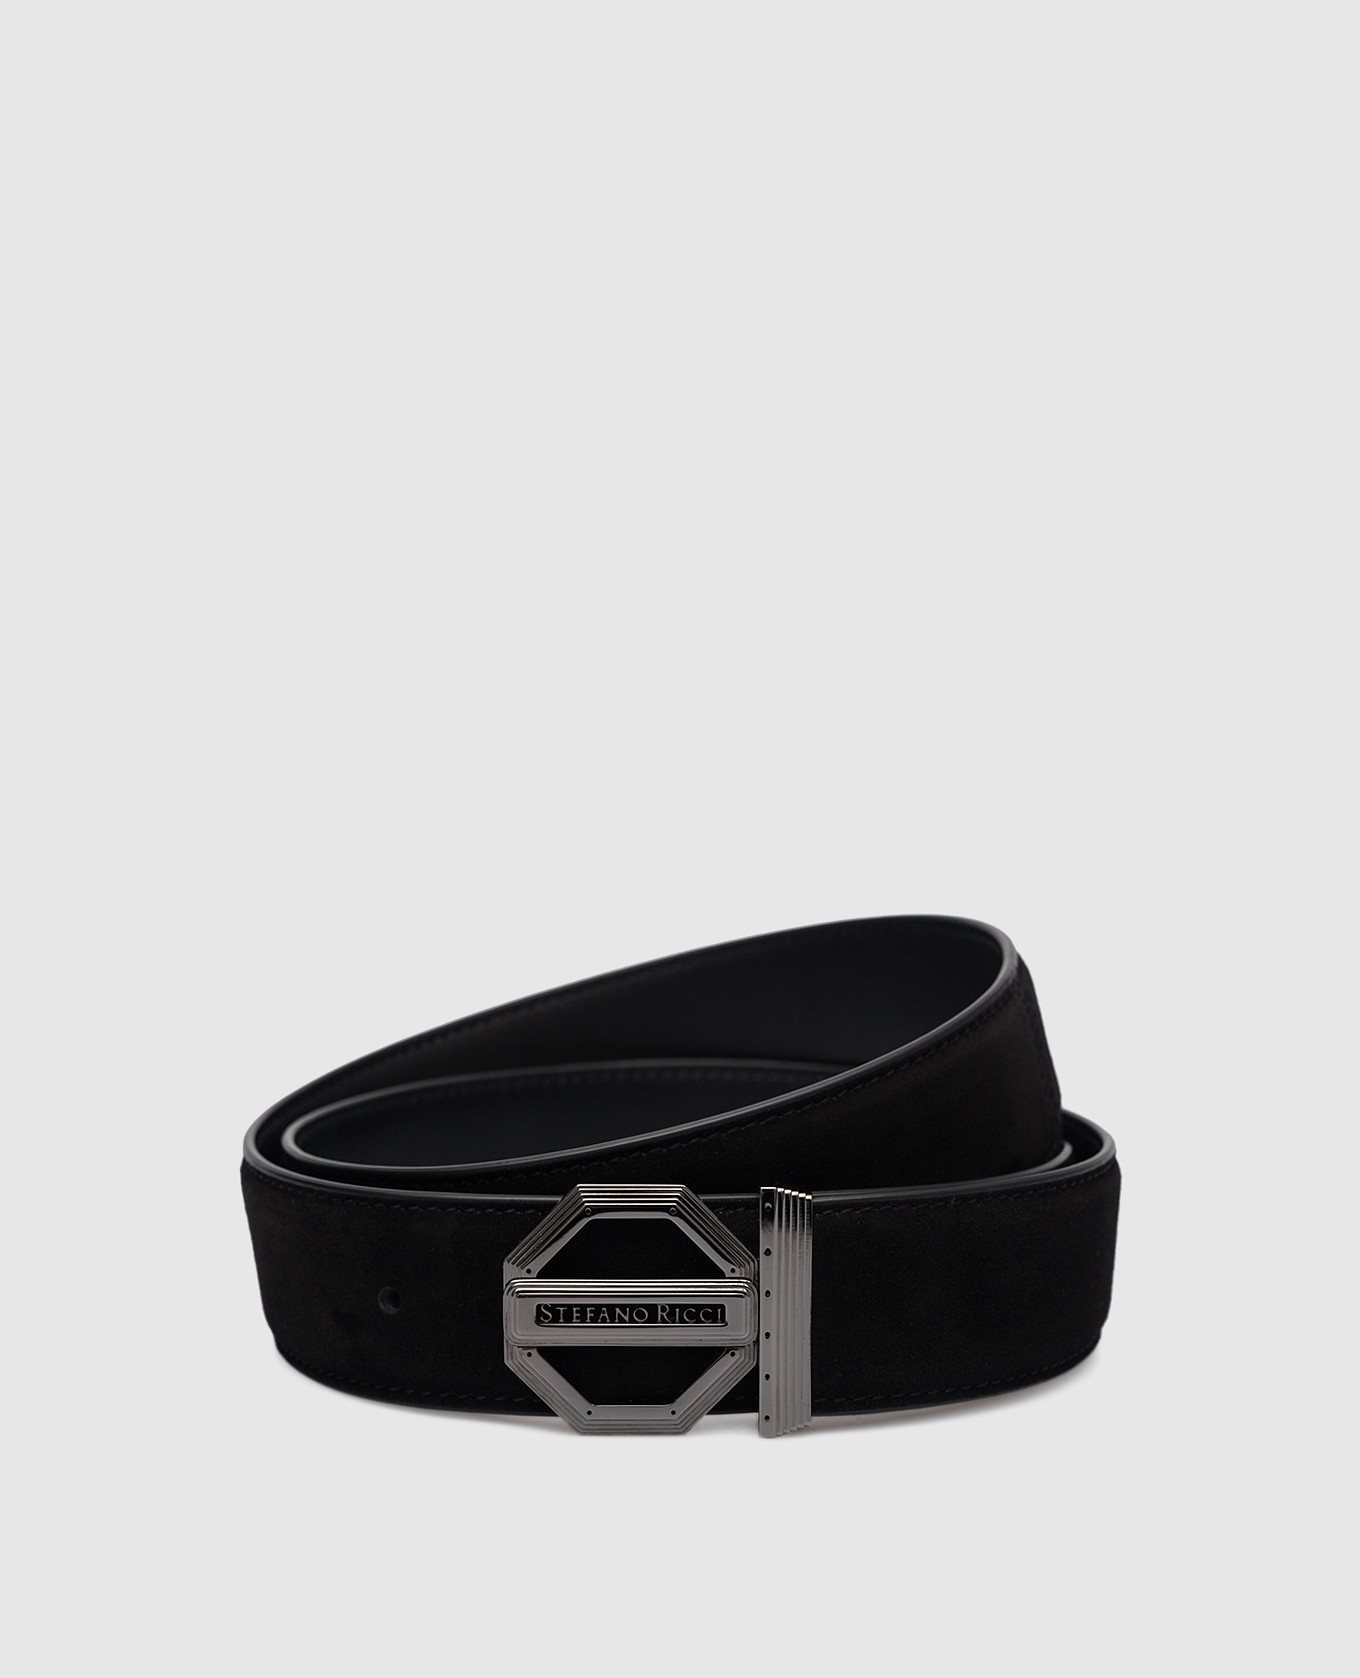 Black suede belt with logo